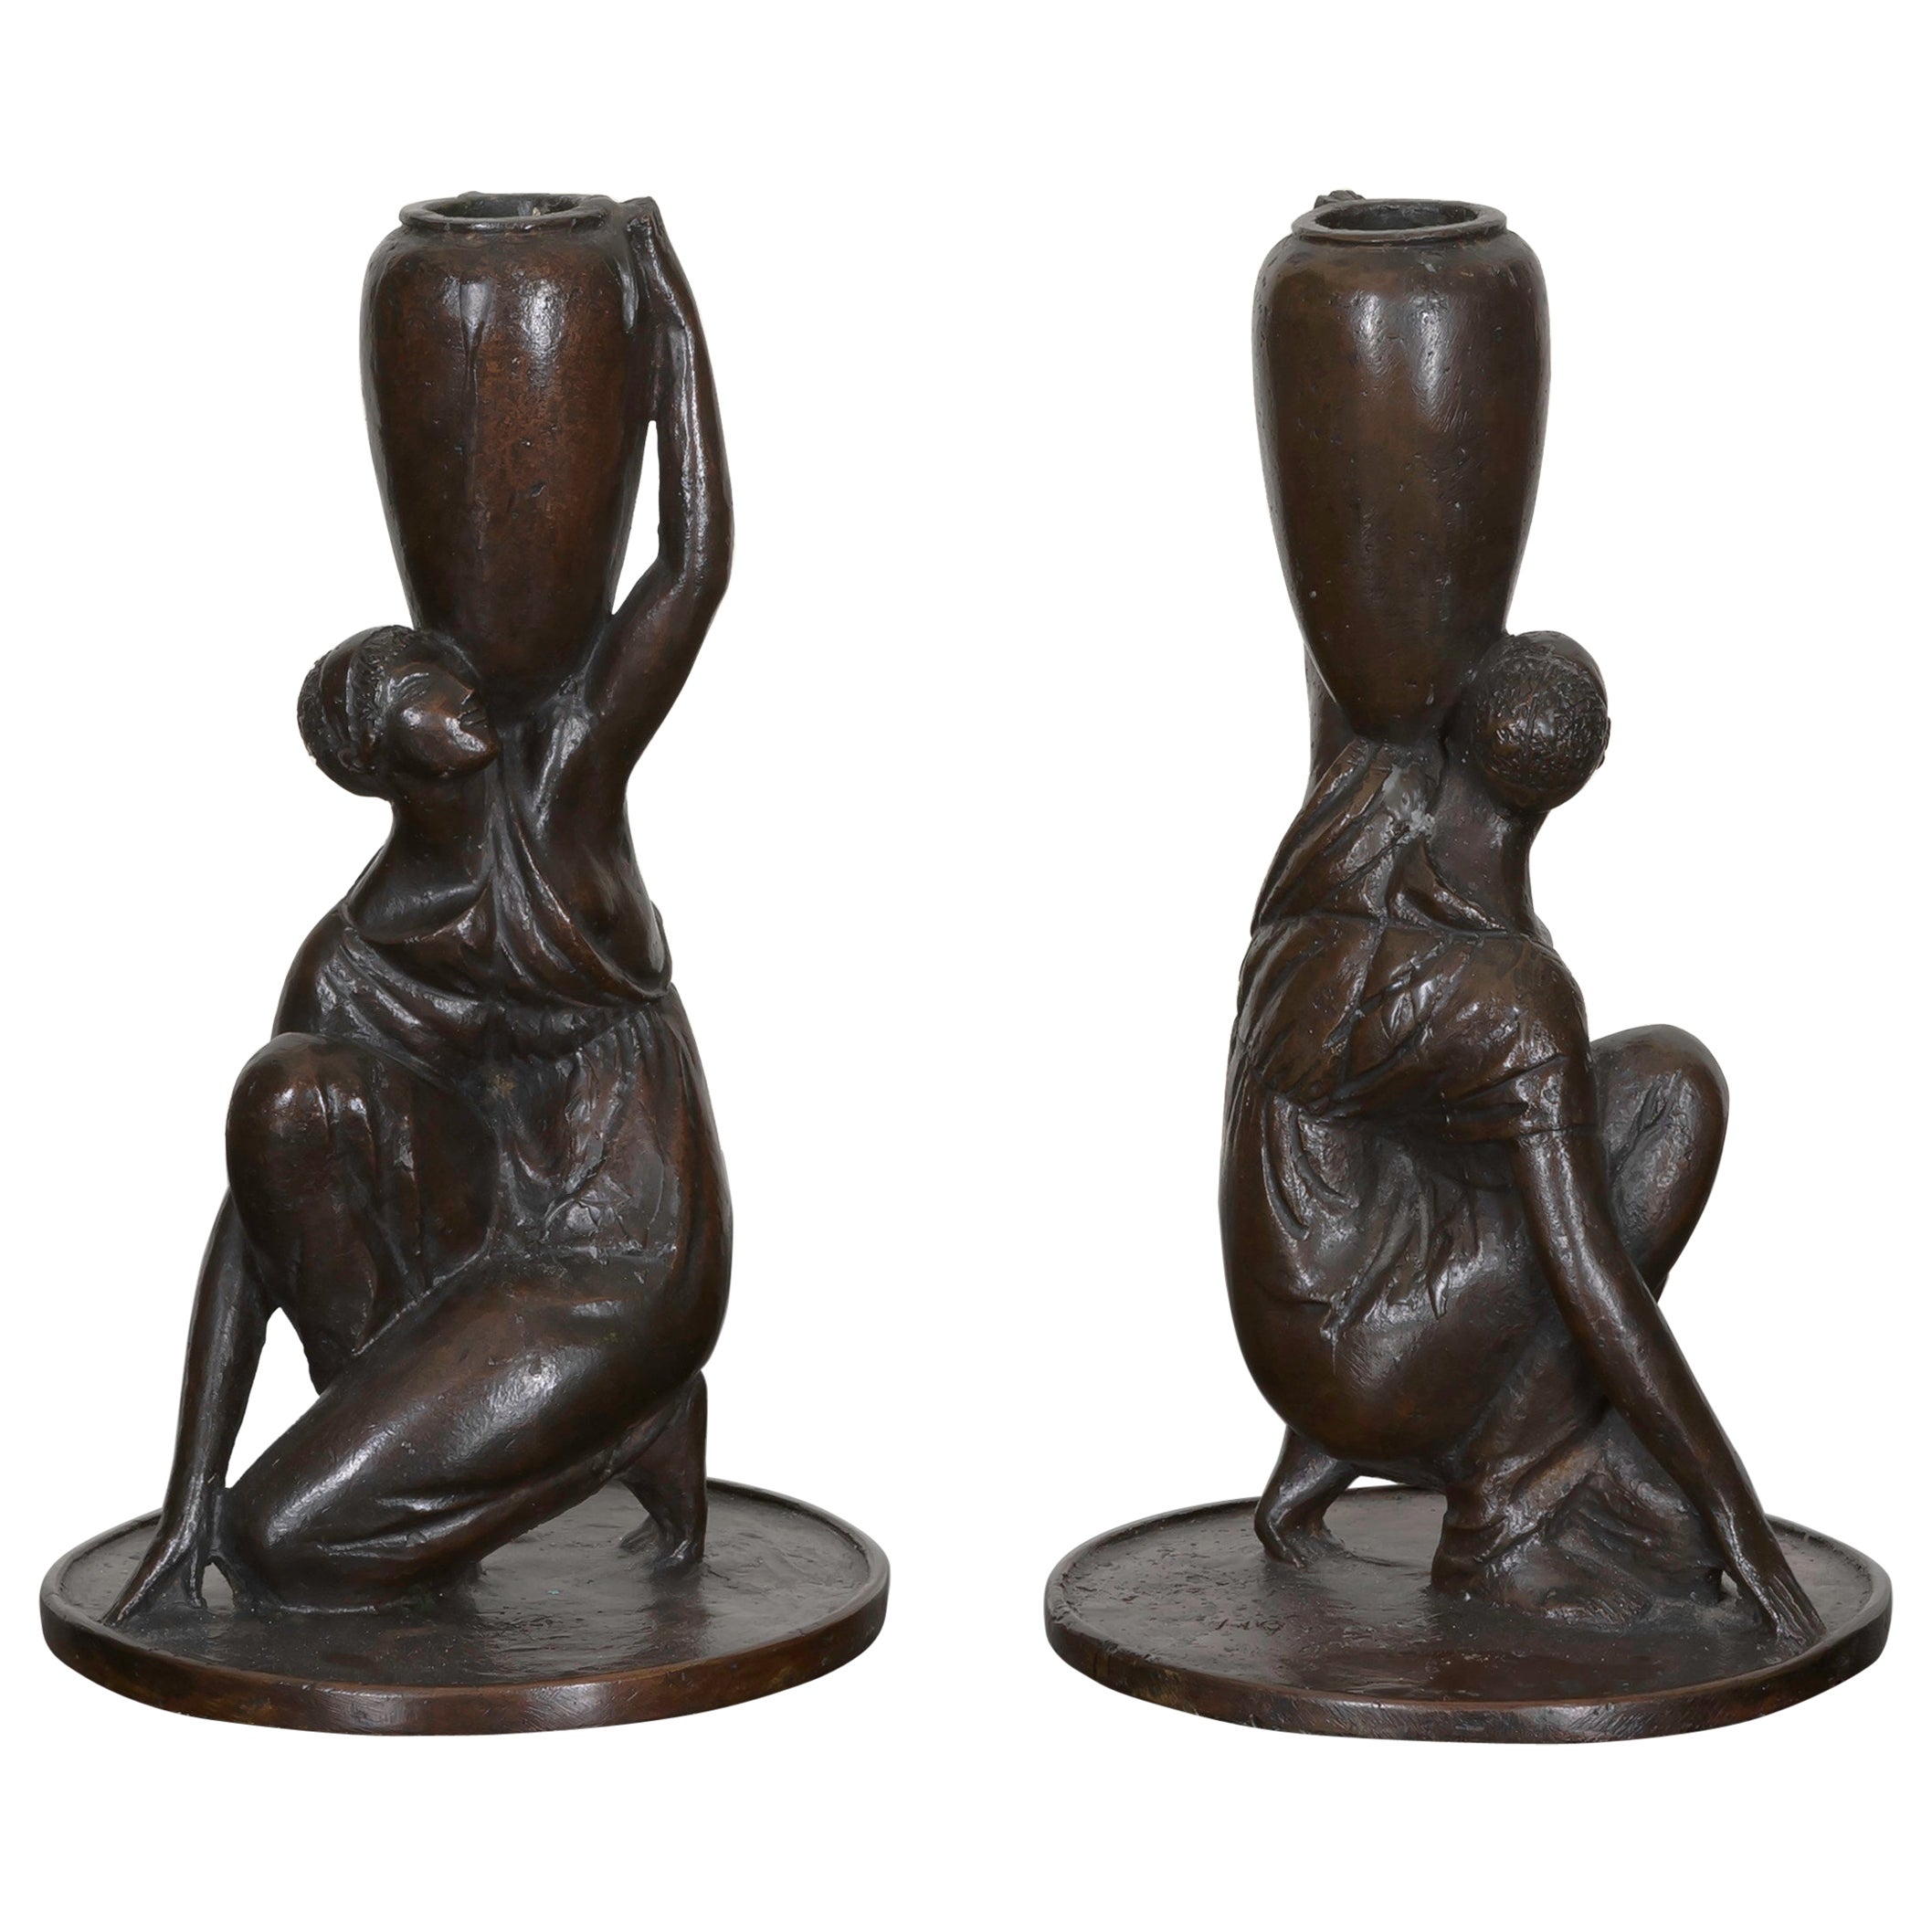 Skulpturale Bronze-Kerzenständer von Cecil de Blaquiere Howard, datiert 1919